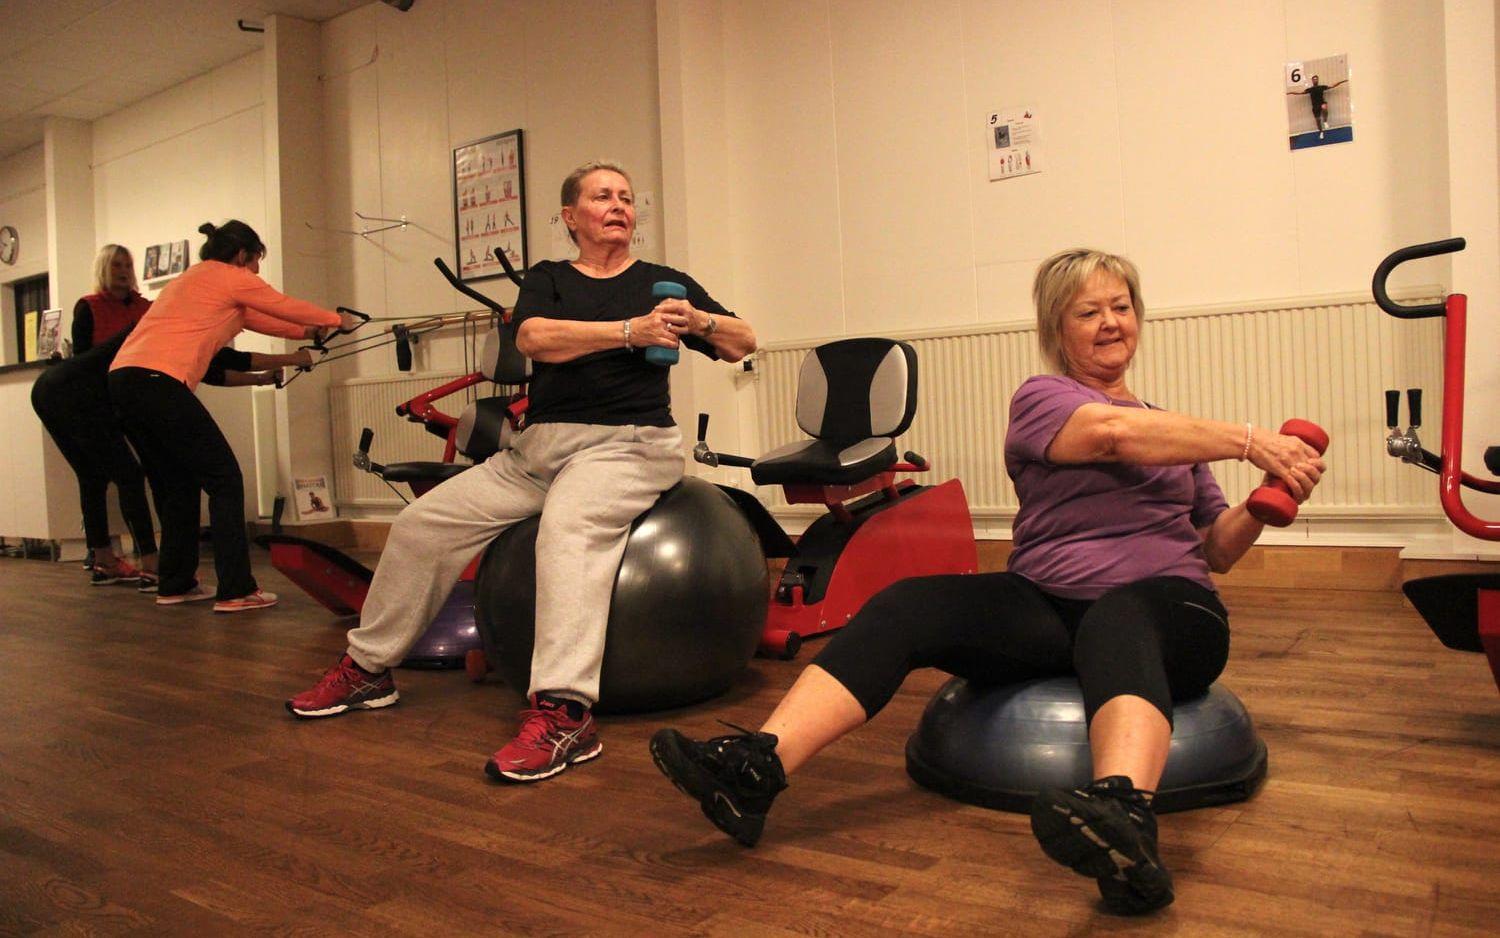 Margareta Westberg och Kicki Hermansson är några av dem som ofta tränar på Gymmet i Kungsbacka. "Det blir en gemenskap och en bra känsla här" säger Kicki. Bild: Lisa Henricson